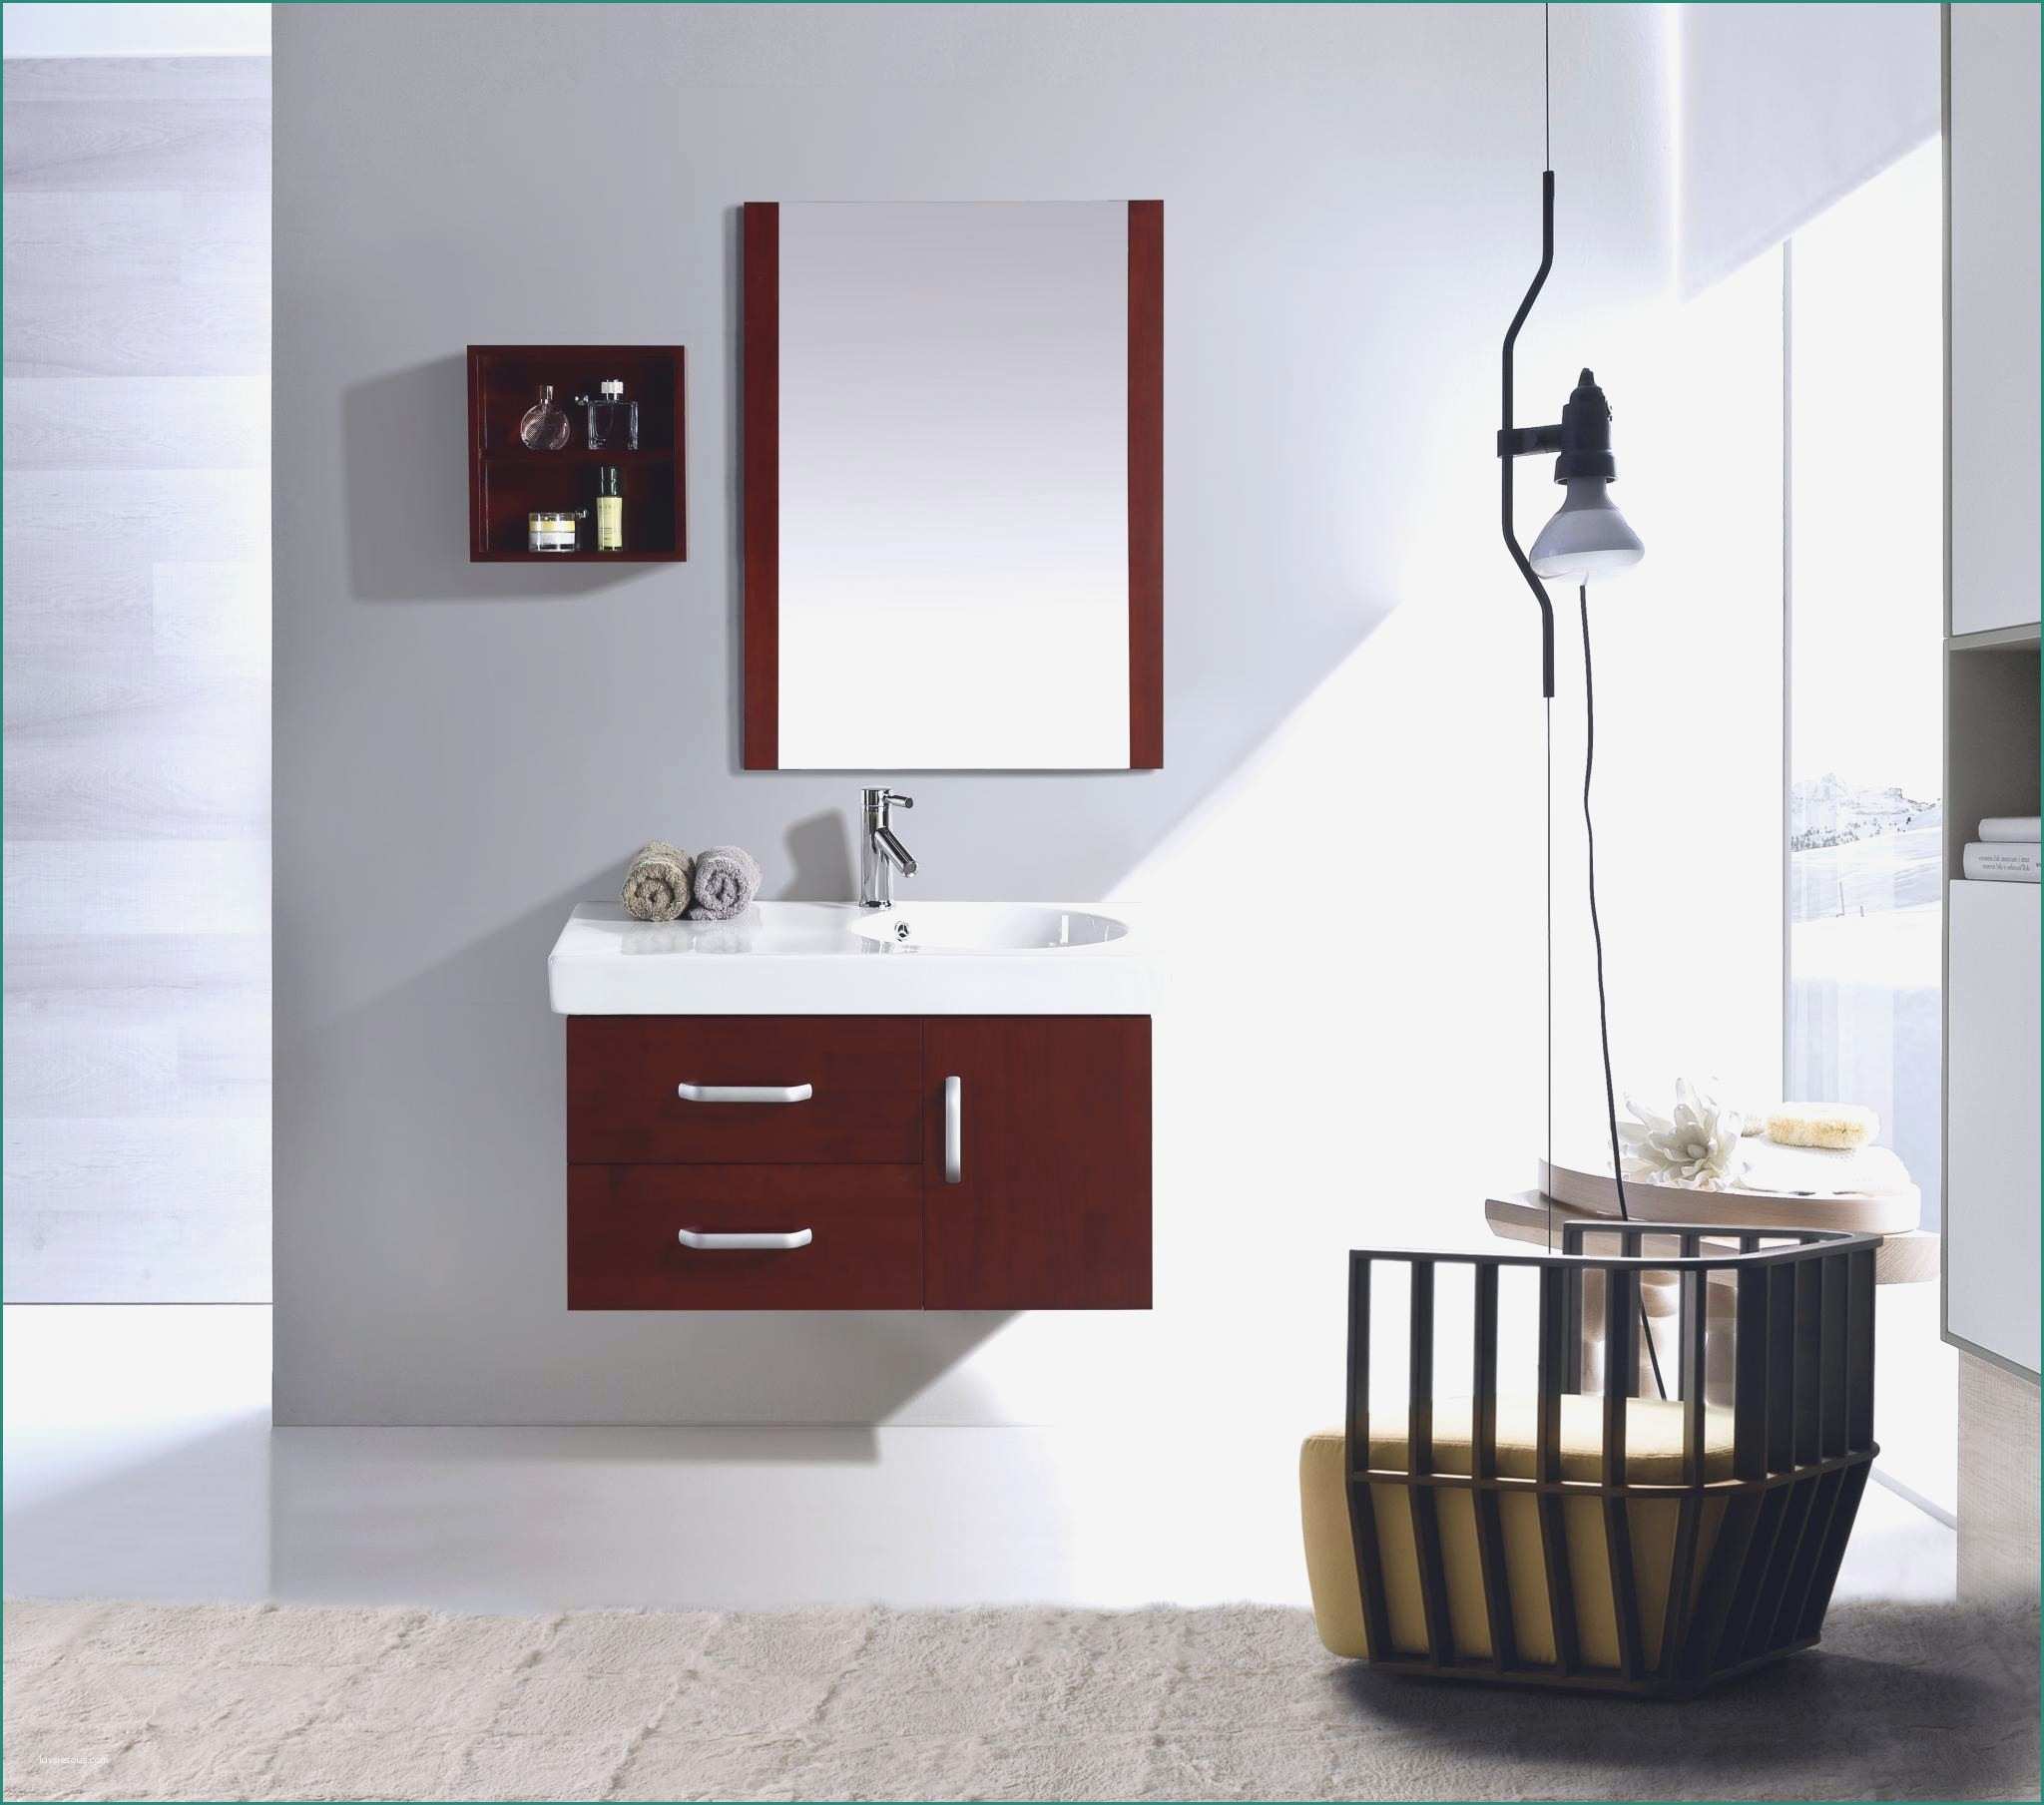 Porta Tv A Parete sospesi E Elegante Mobile Bagno Ikea Casa Design Idee Su Arredamento